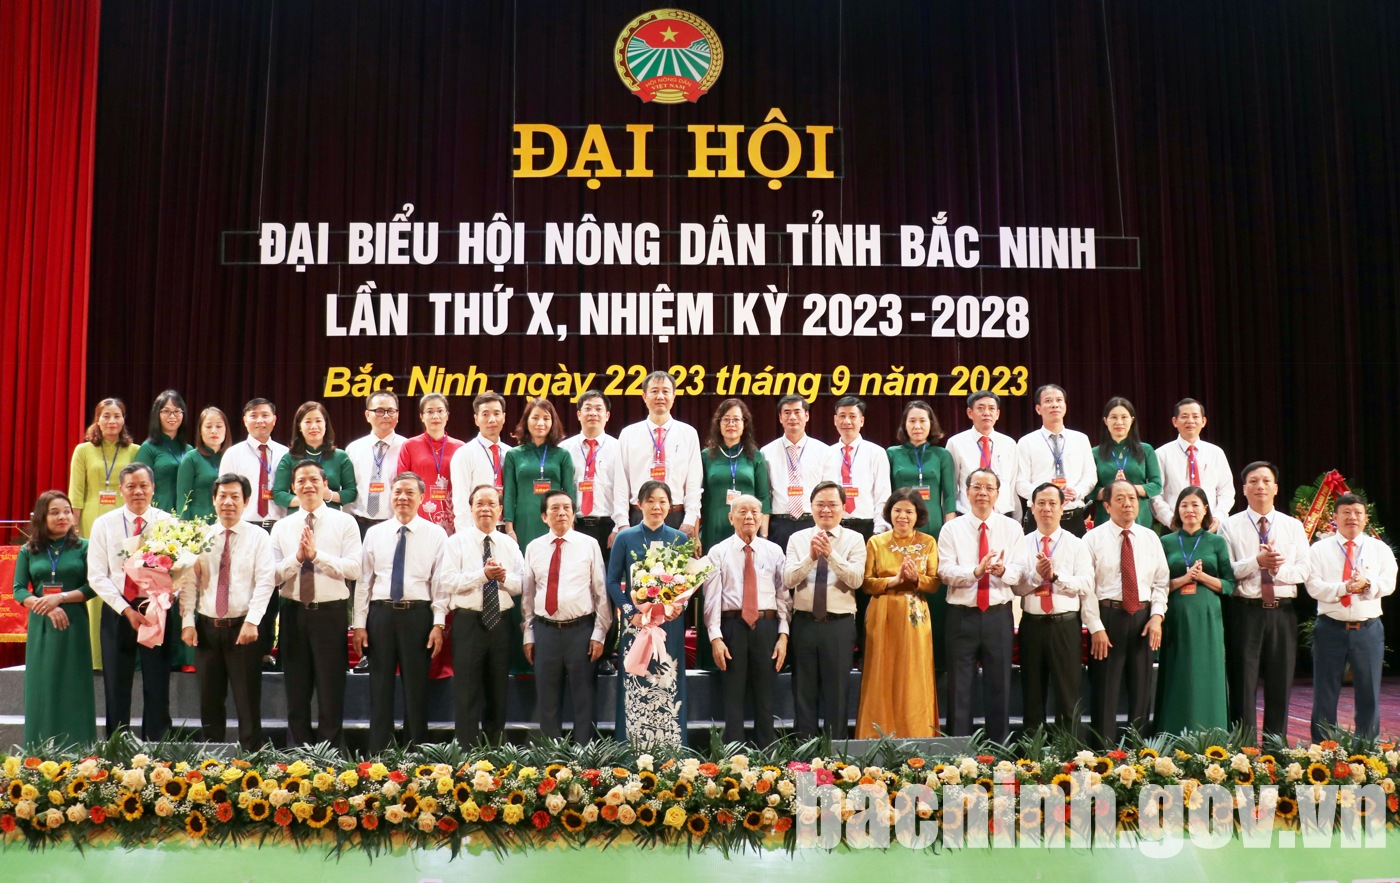 Đại hội đại biểu Hội Nông dân tỉnh Bắc Ninh lần thứ X, nhiệm kỳ 2023 - 2028